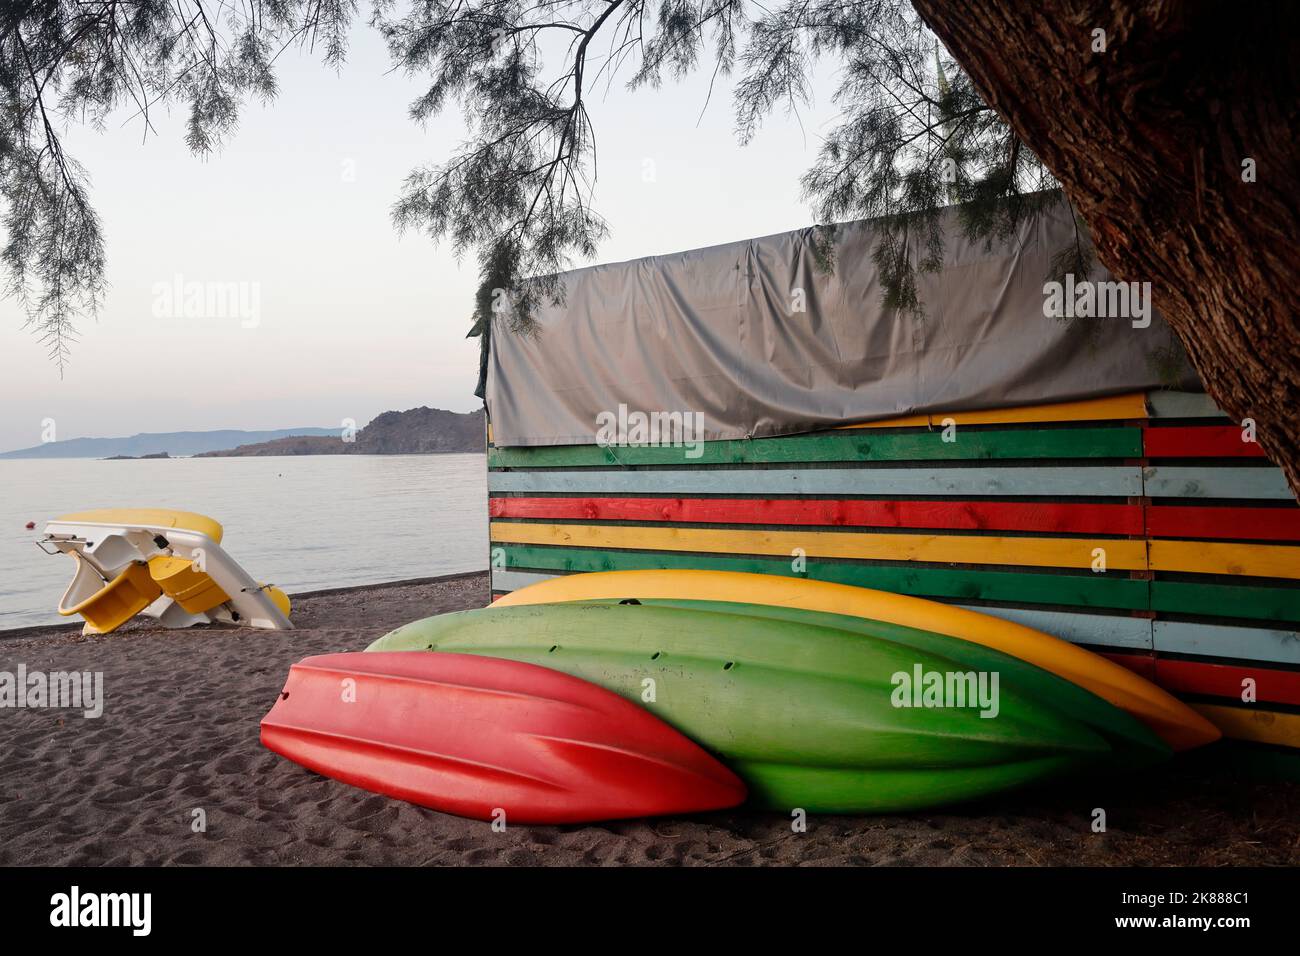 Kayaks / canoës et hangar coloré sur une plage de sable, Lesbos. Septembre / octobre 2022. Automne. Banque D'Images